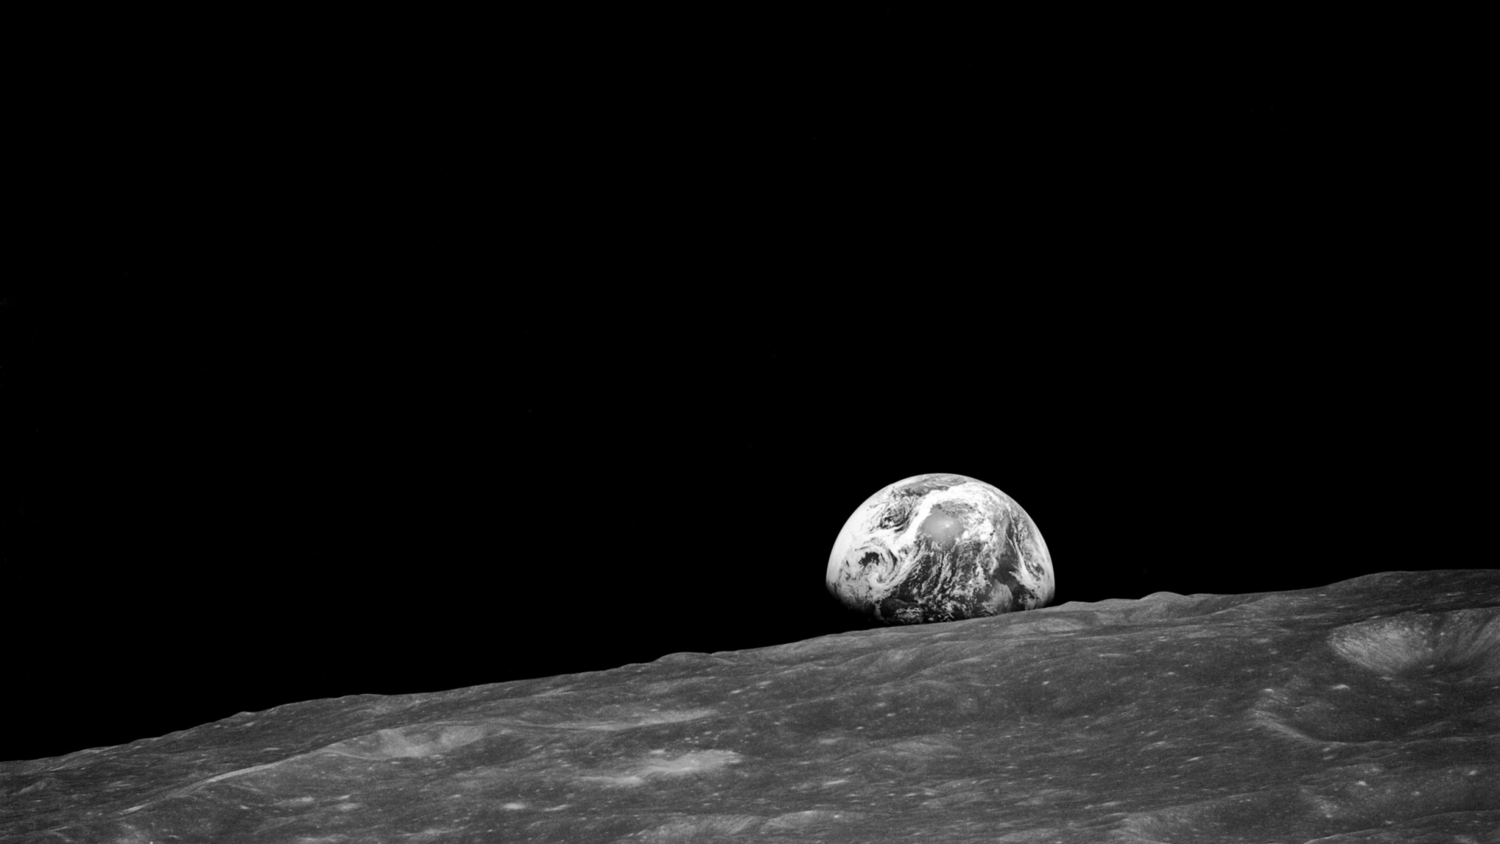 Russiske eksperiment, der simulerer missioner til månen vil fortsætte i Marts 2019